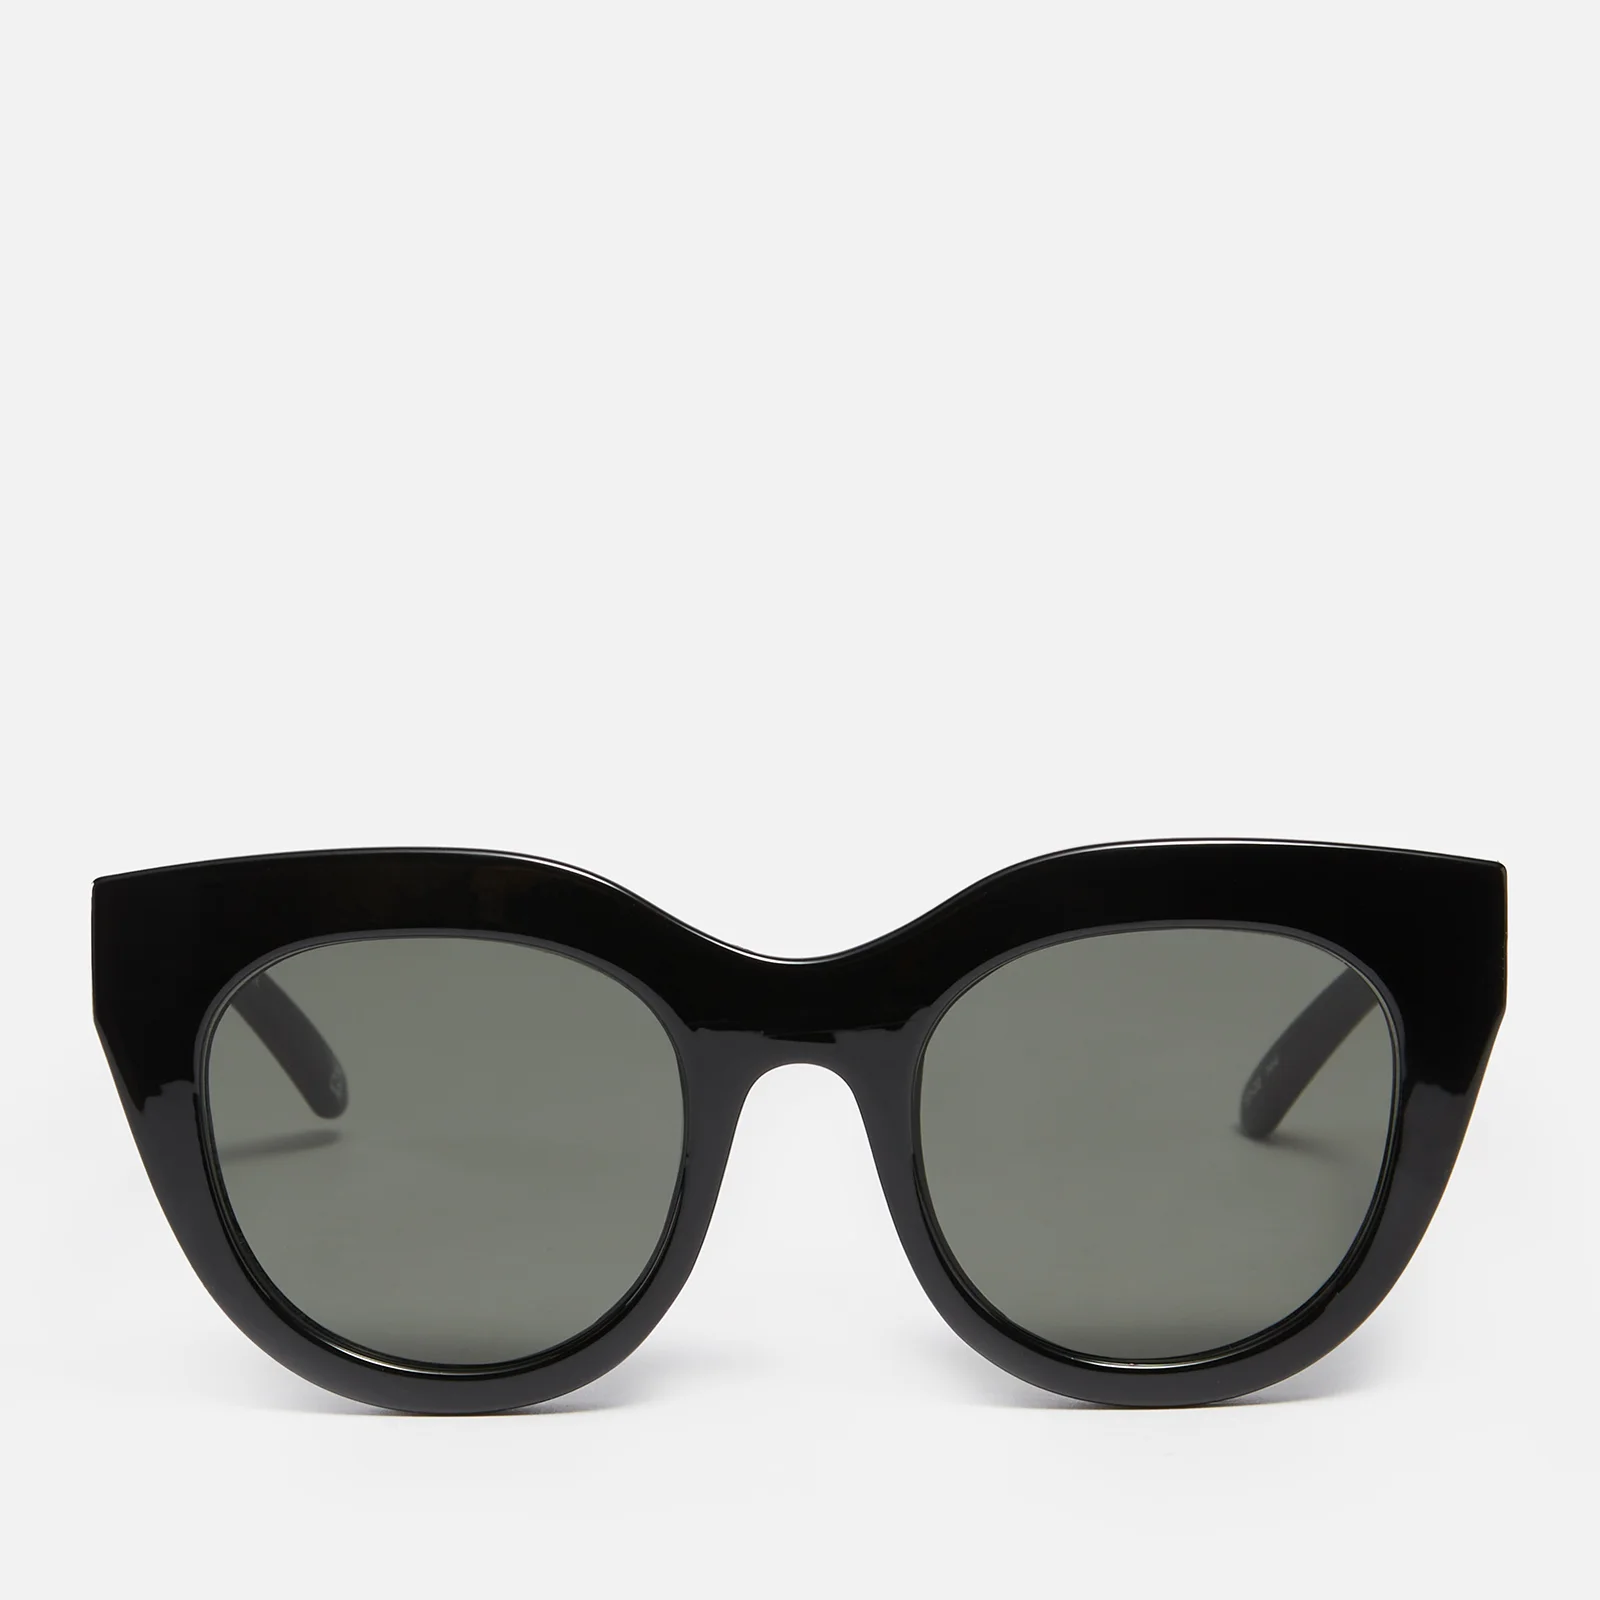 Le Specs Women's Air Heart Sunglasses - Black/Gold Image 1